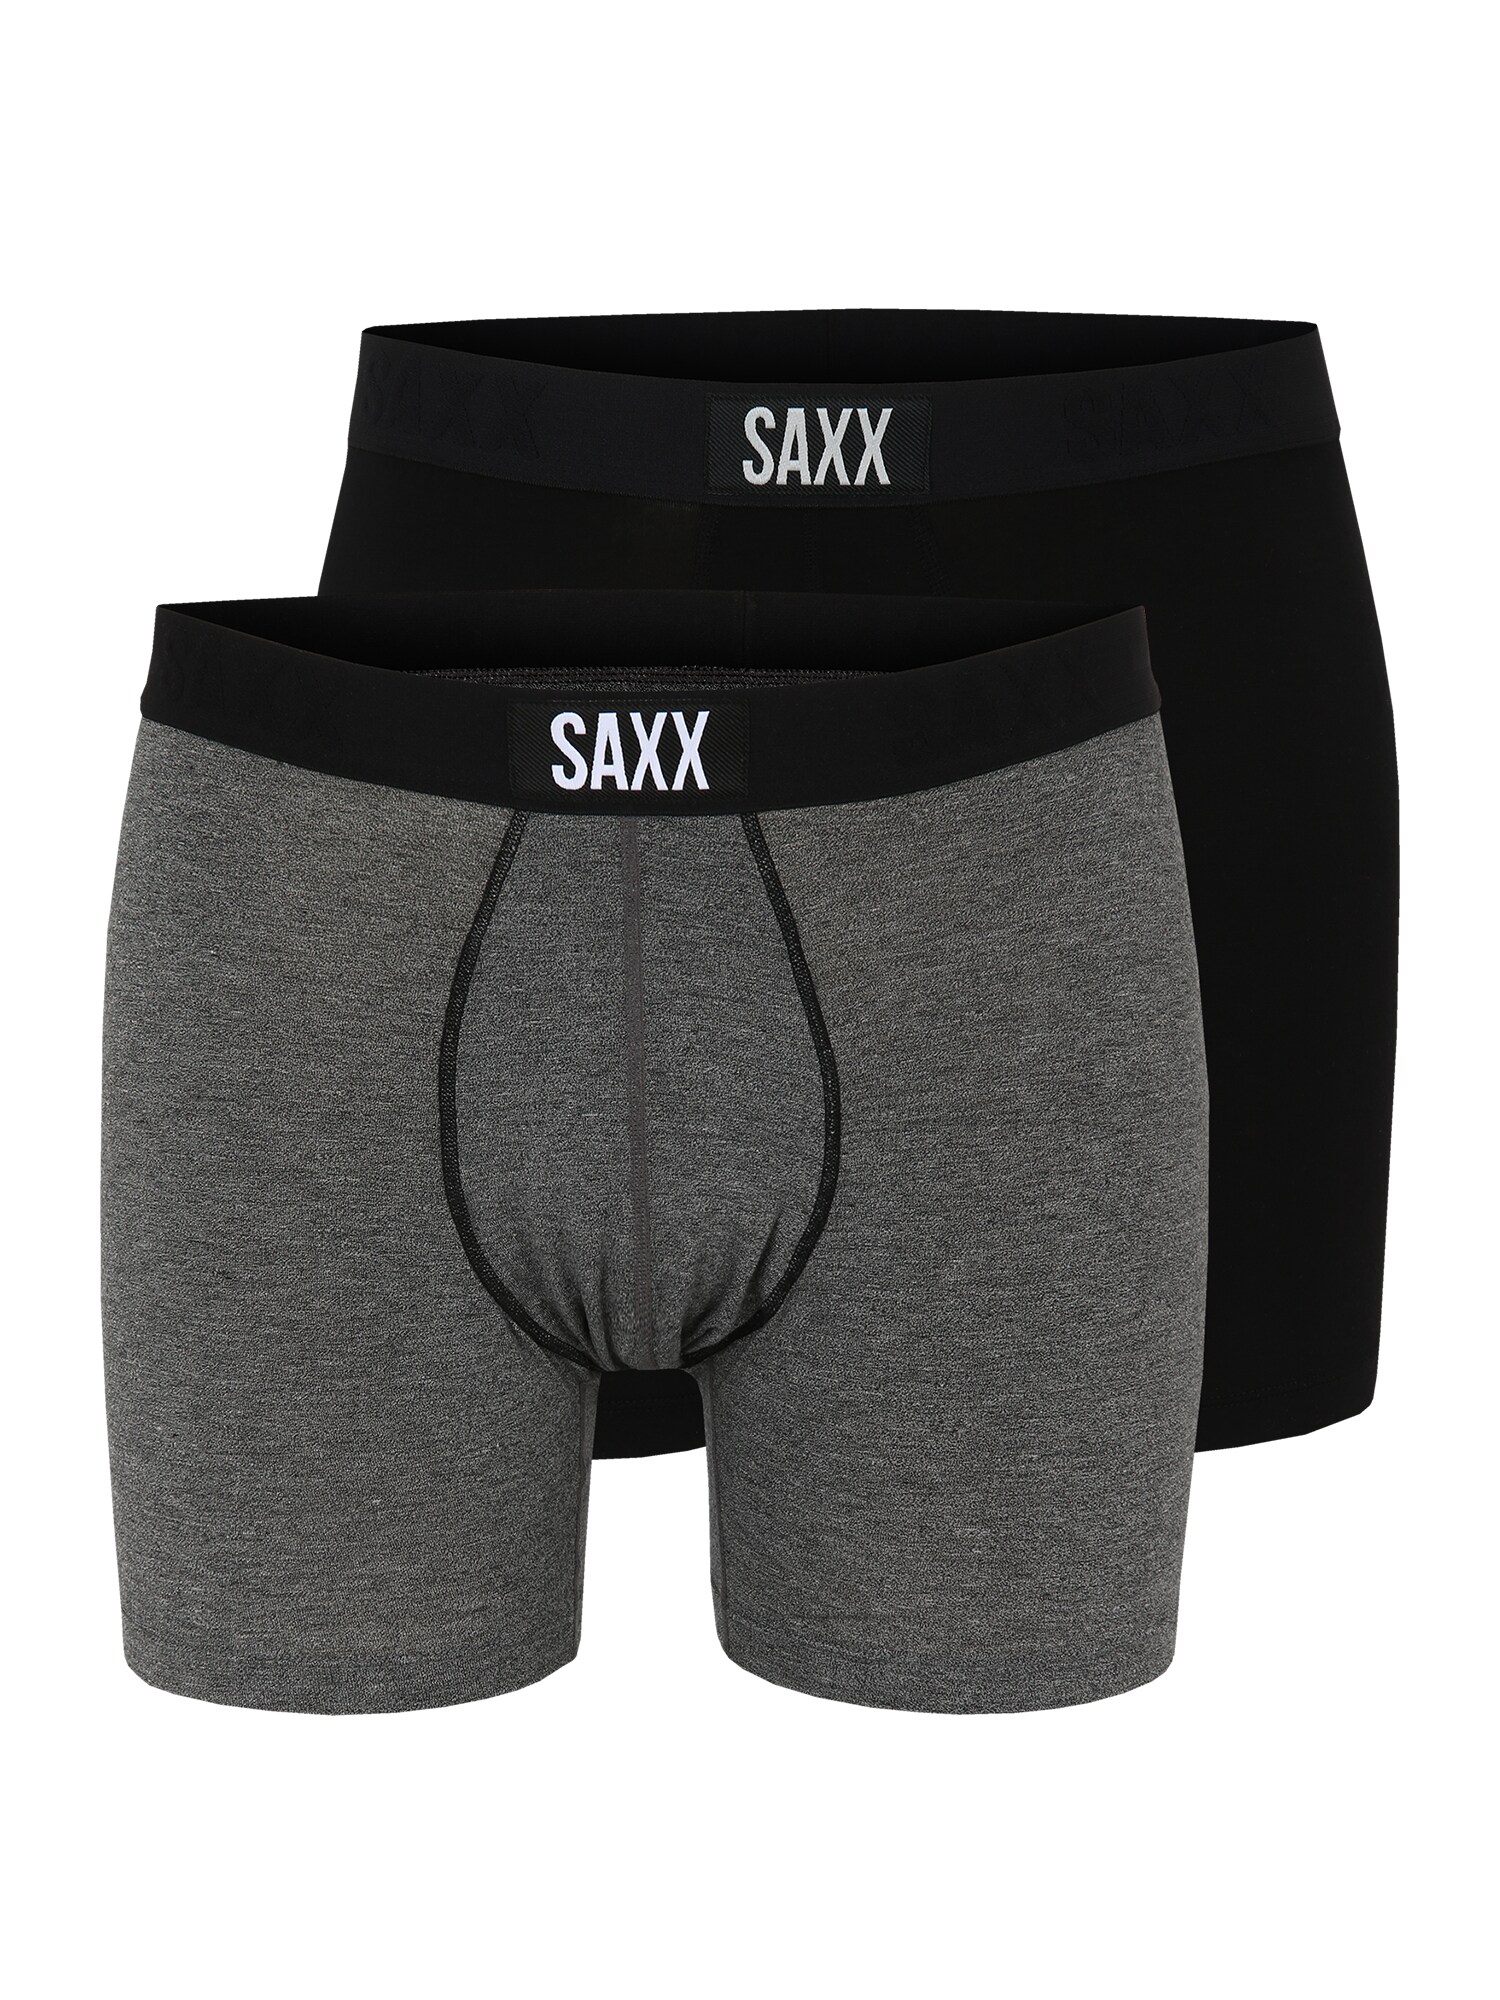 SAXX Sportinės trumpikės juoda / margai pilka / balta